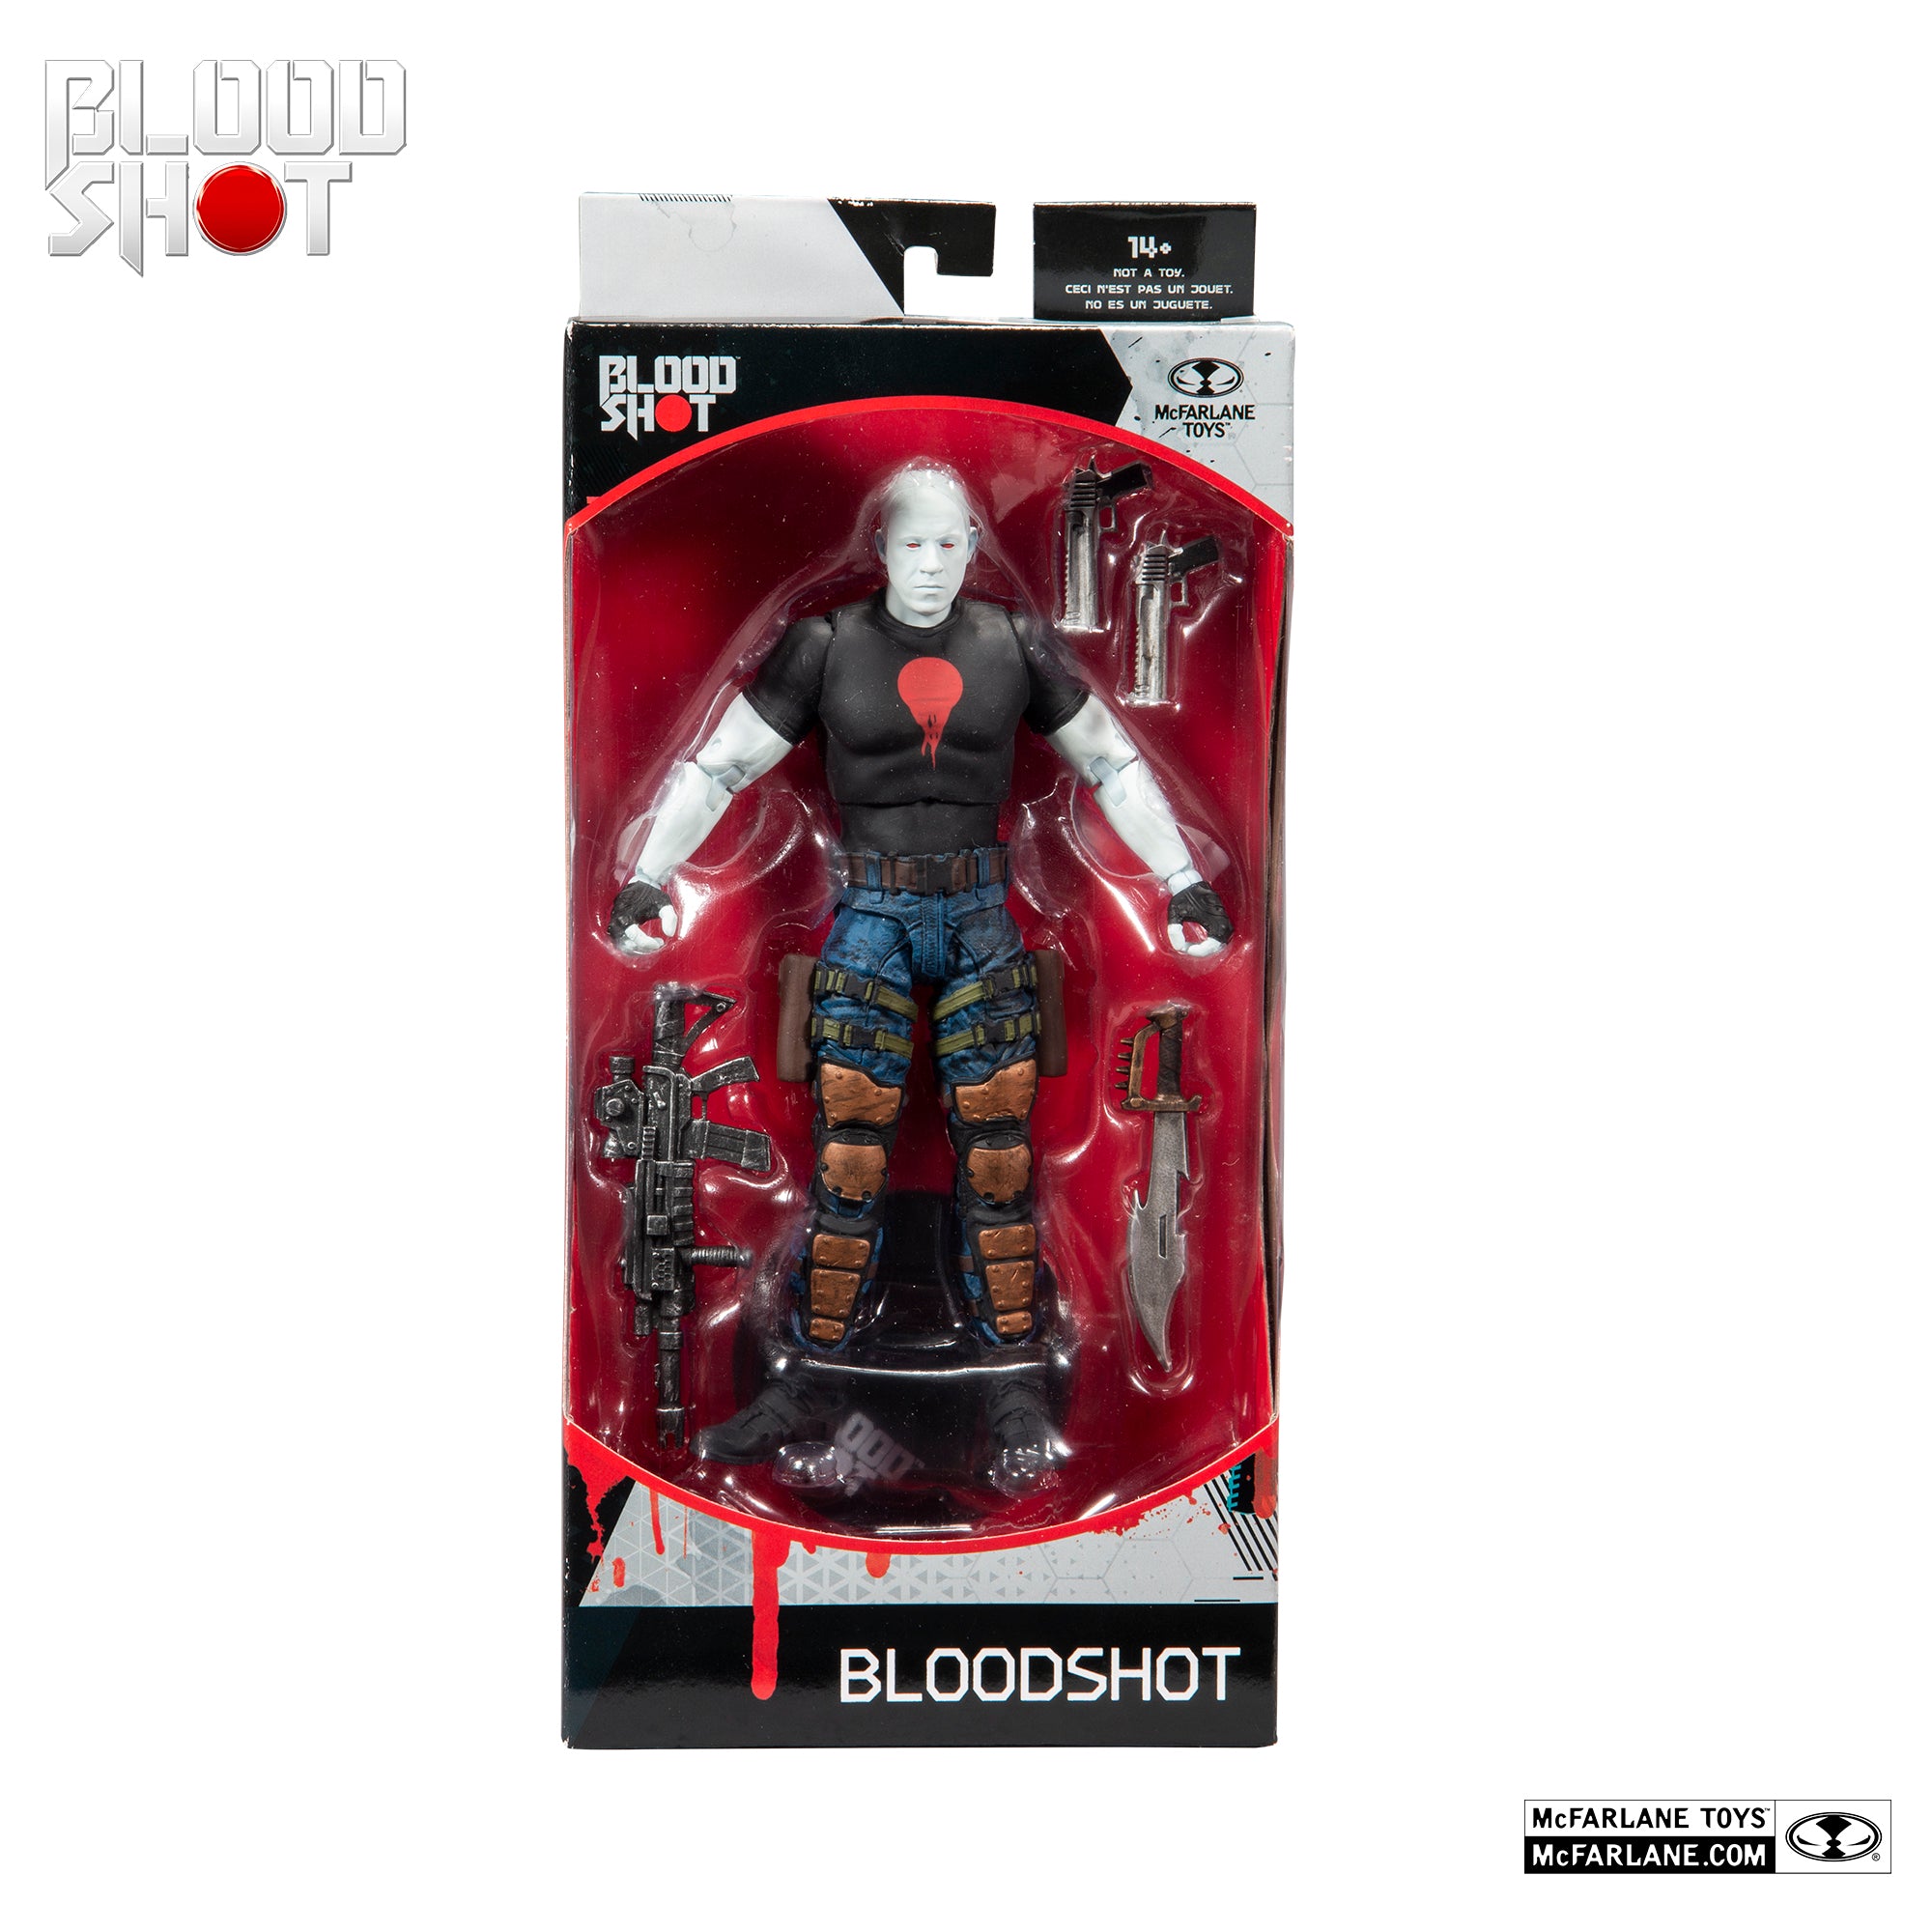 Bloodshot: Bloodshot